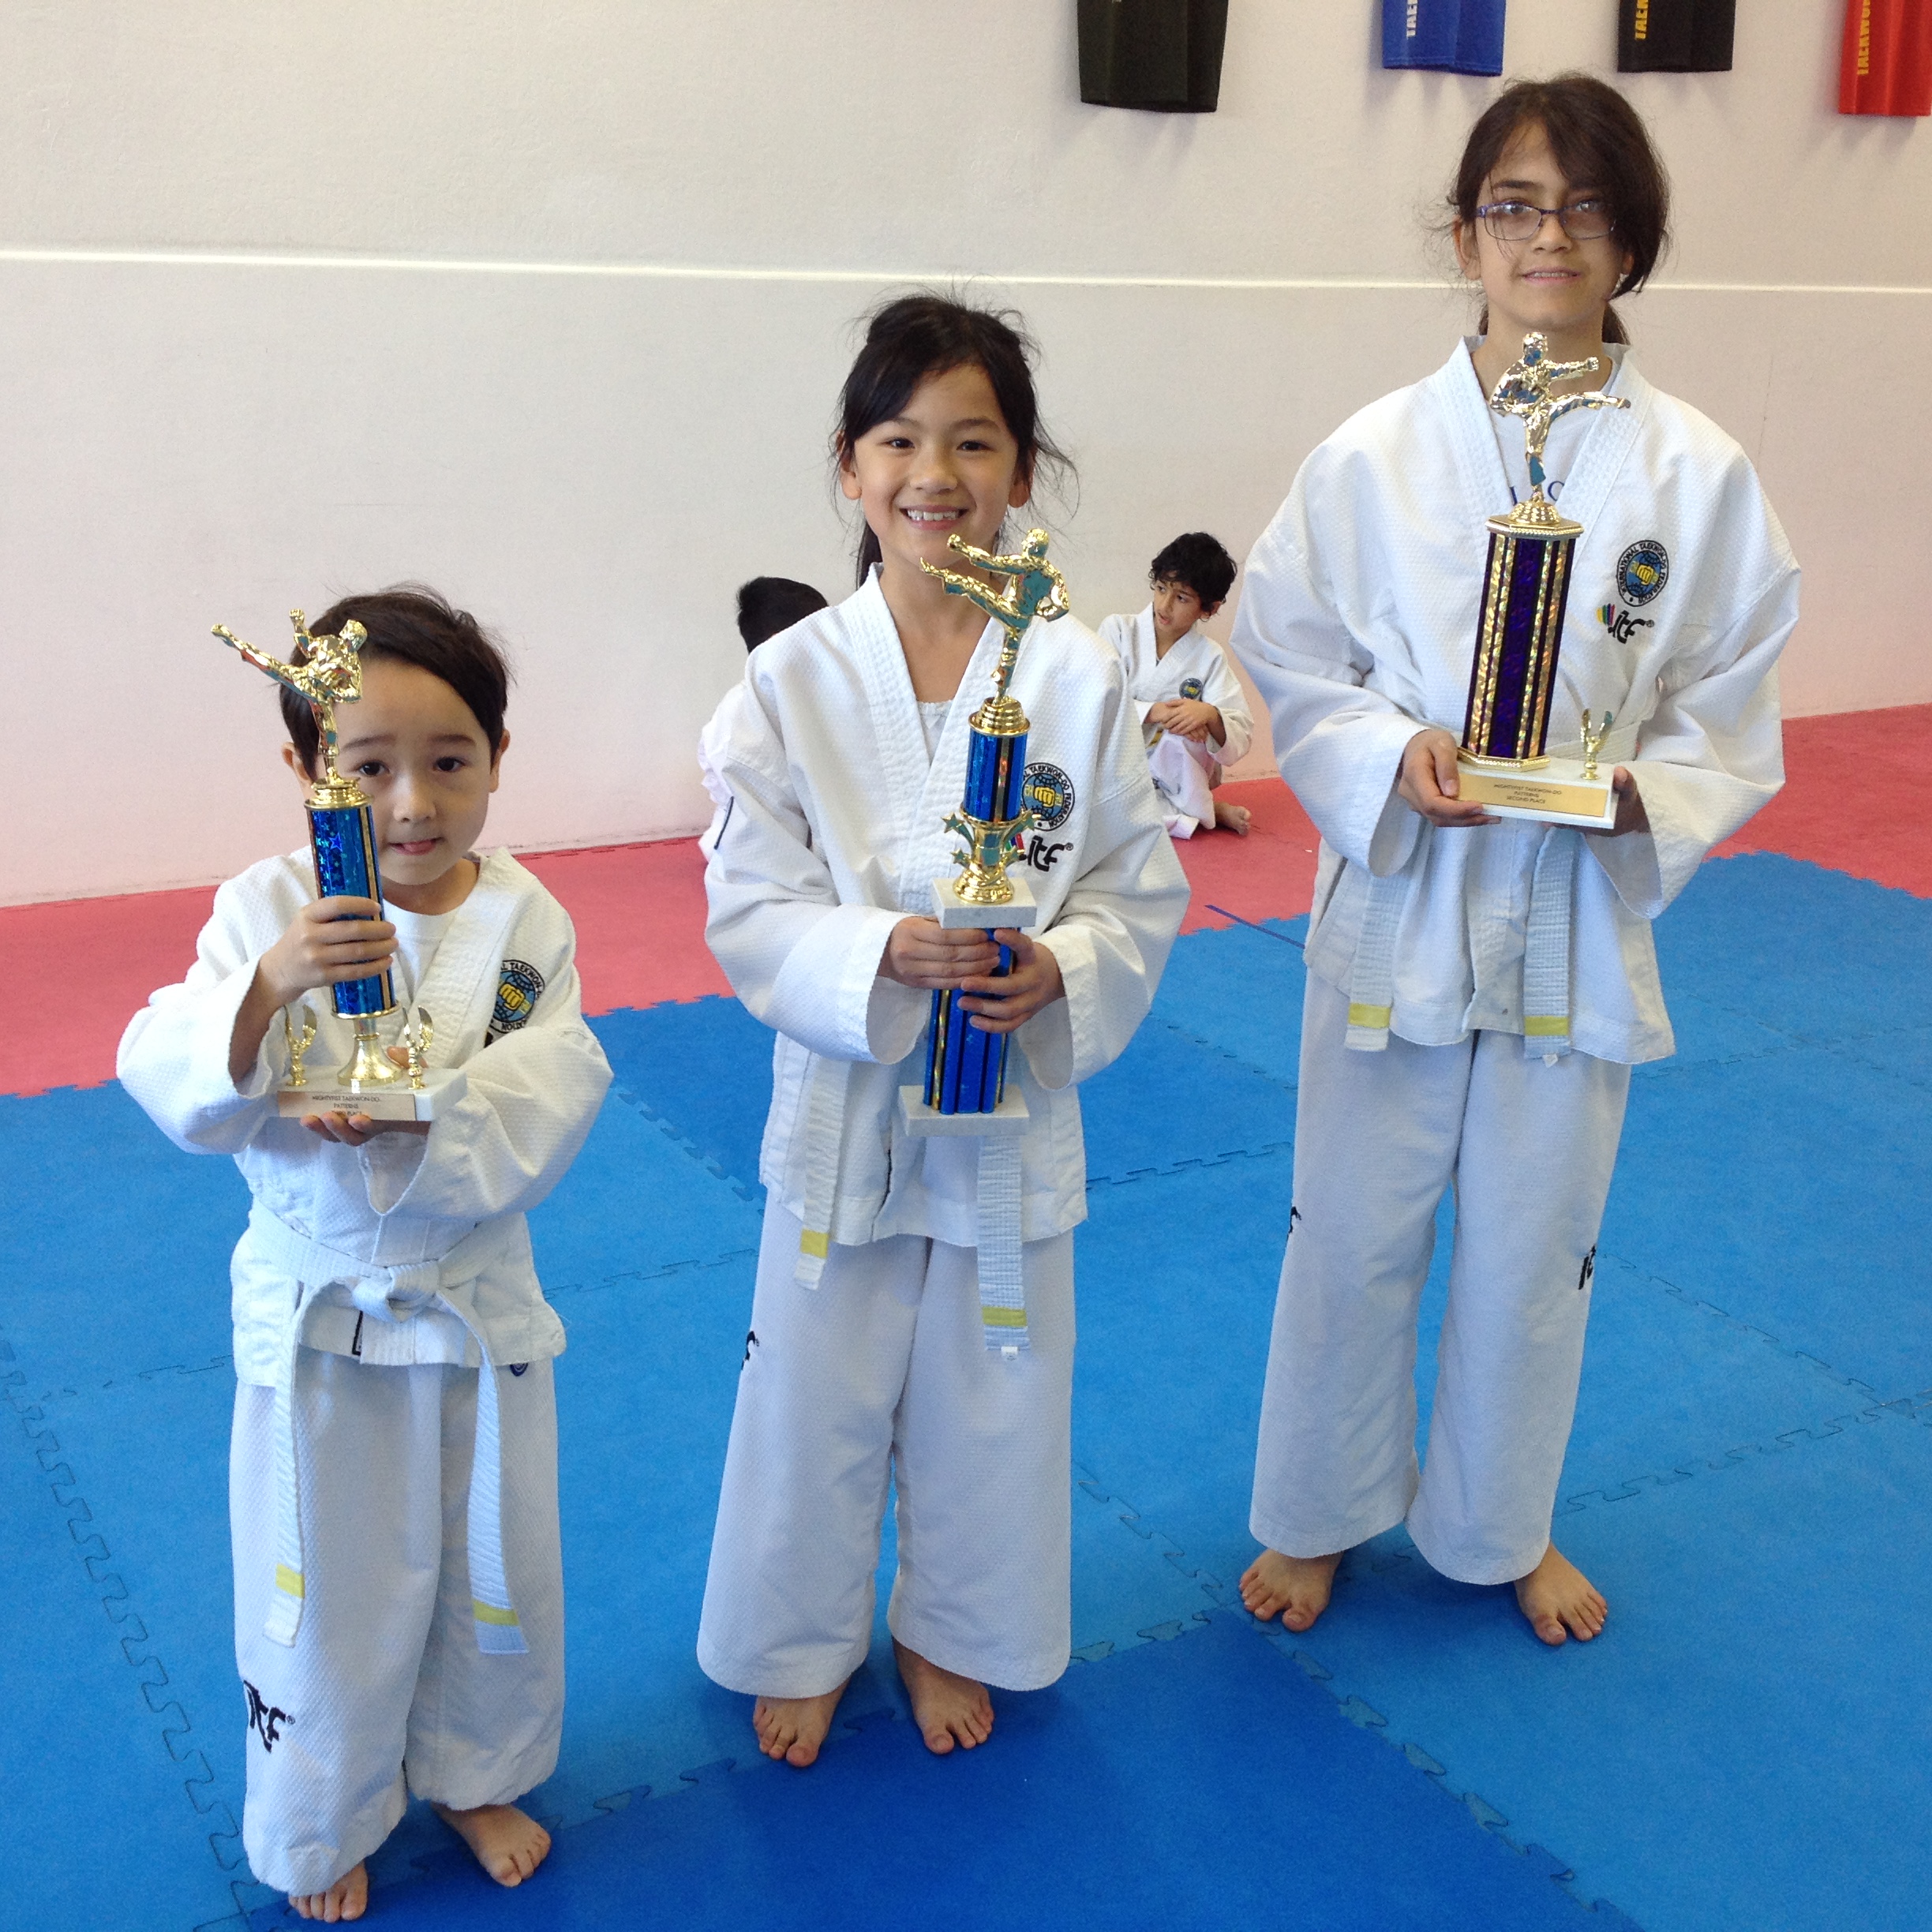 Mightyfist Taekwondo Kids with trophies